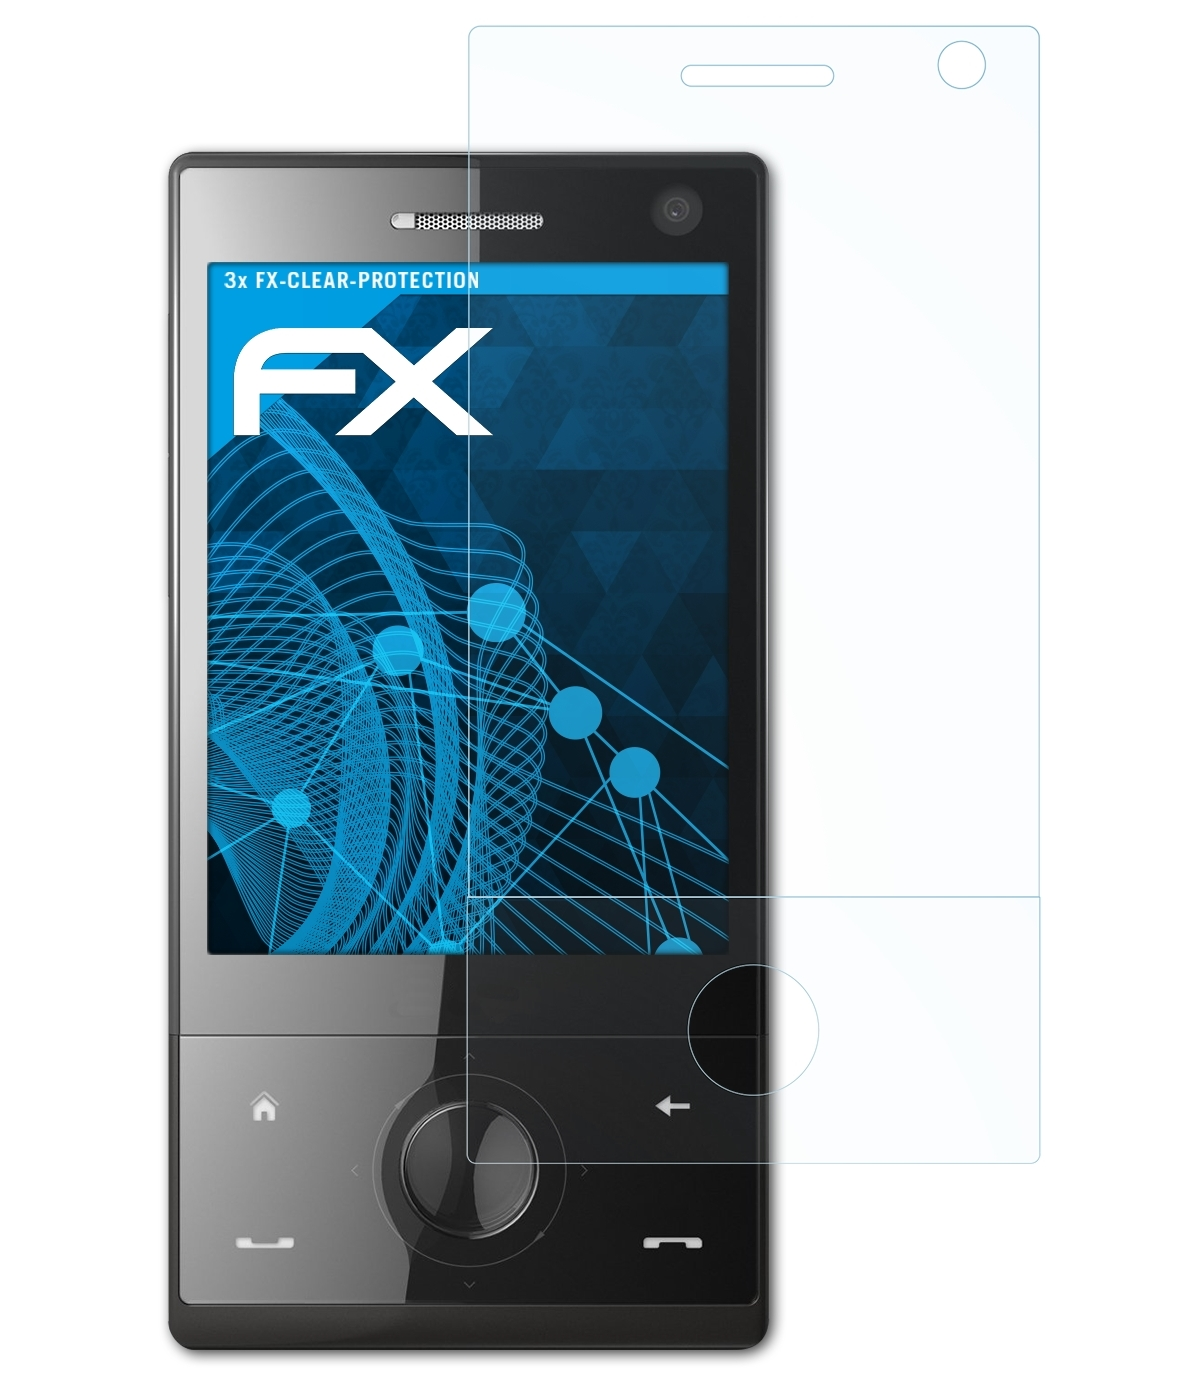 ATFOLIX 3x FX-Clear Touch-Diamond P3700) HTC Displayschutz(für